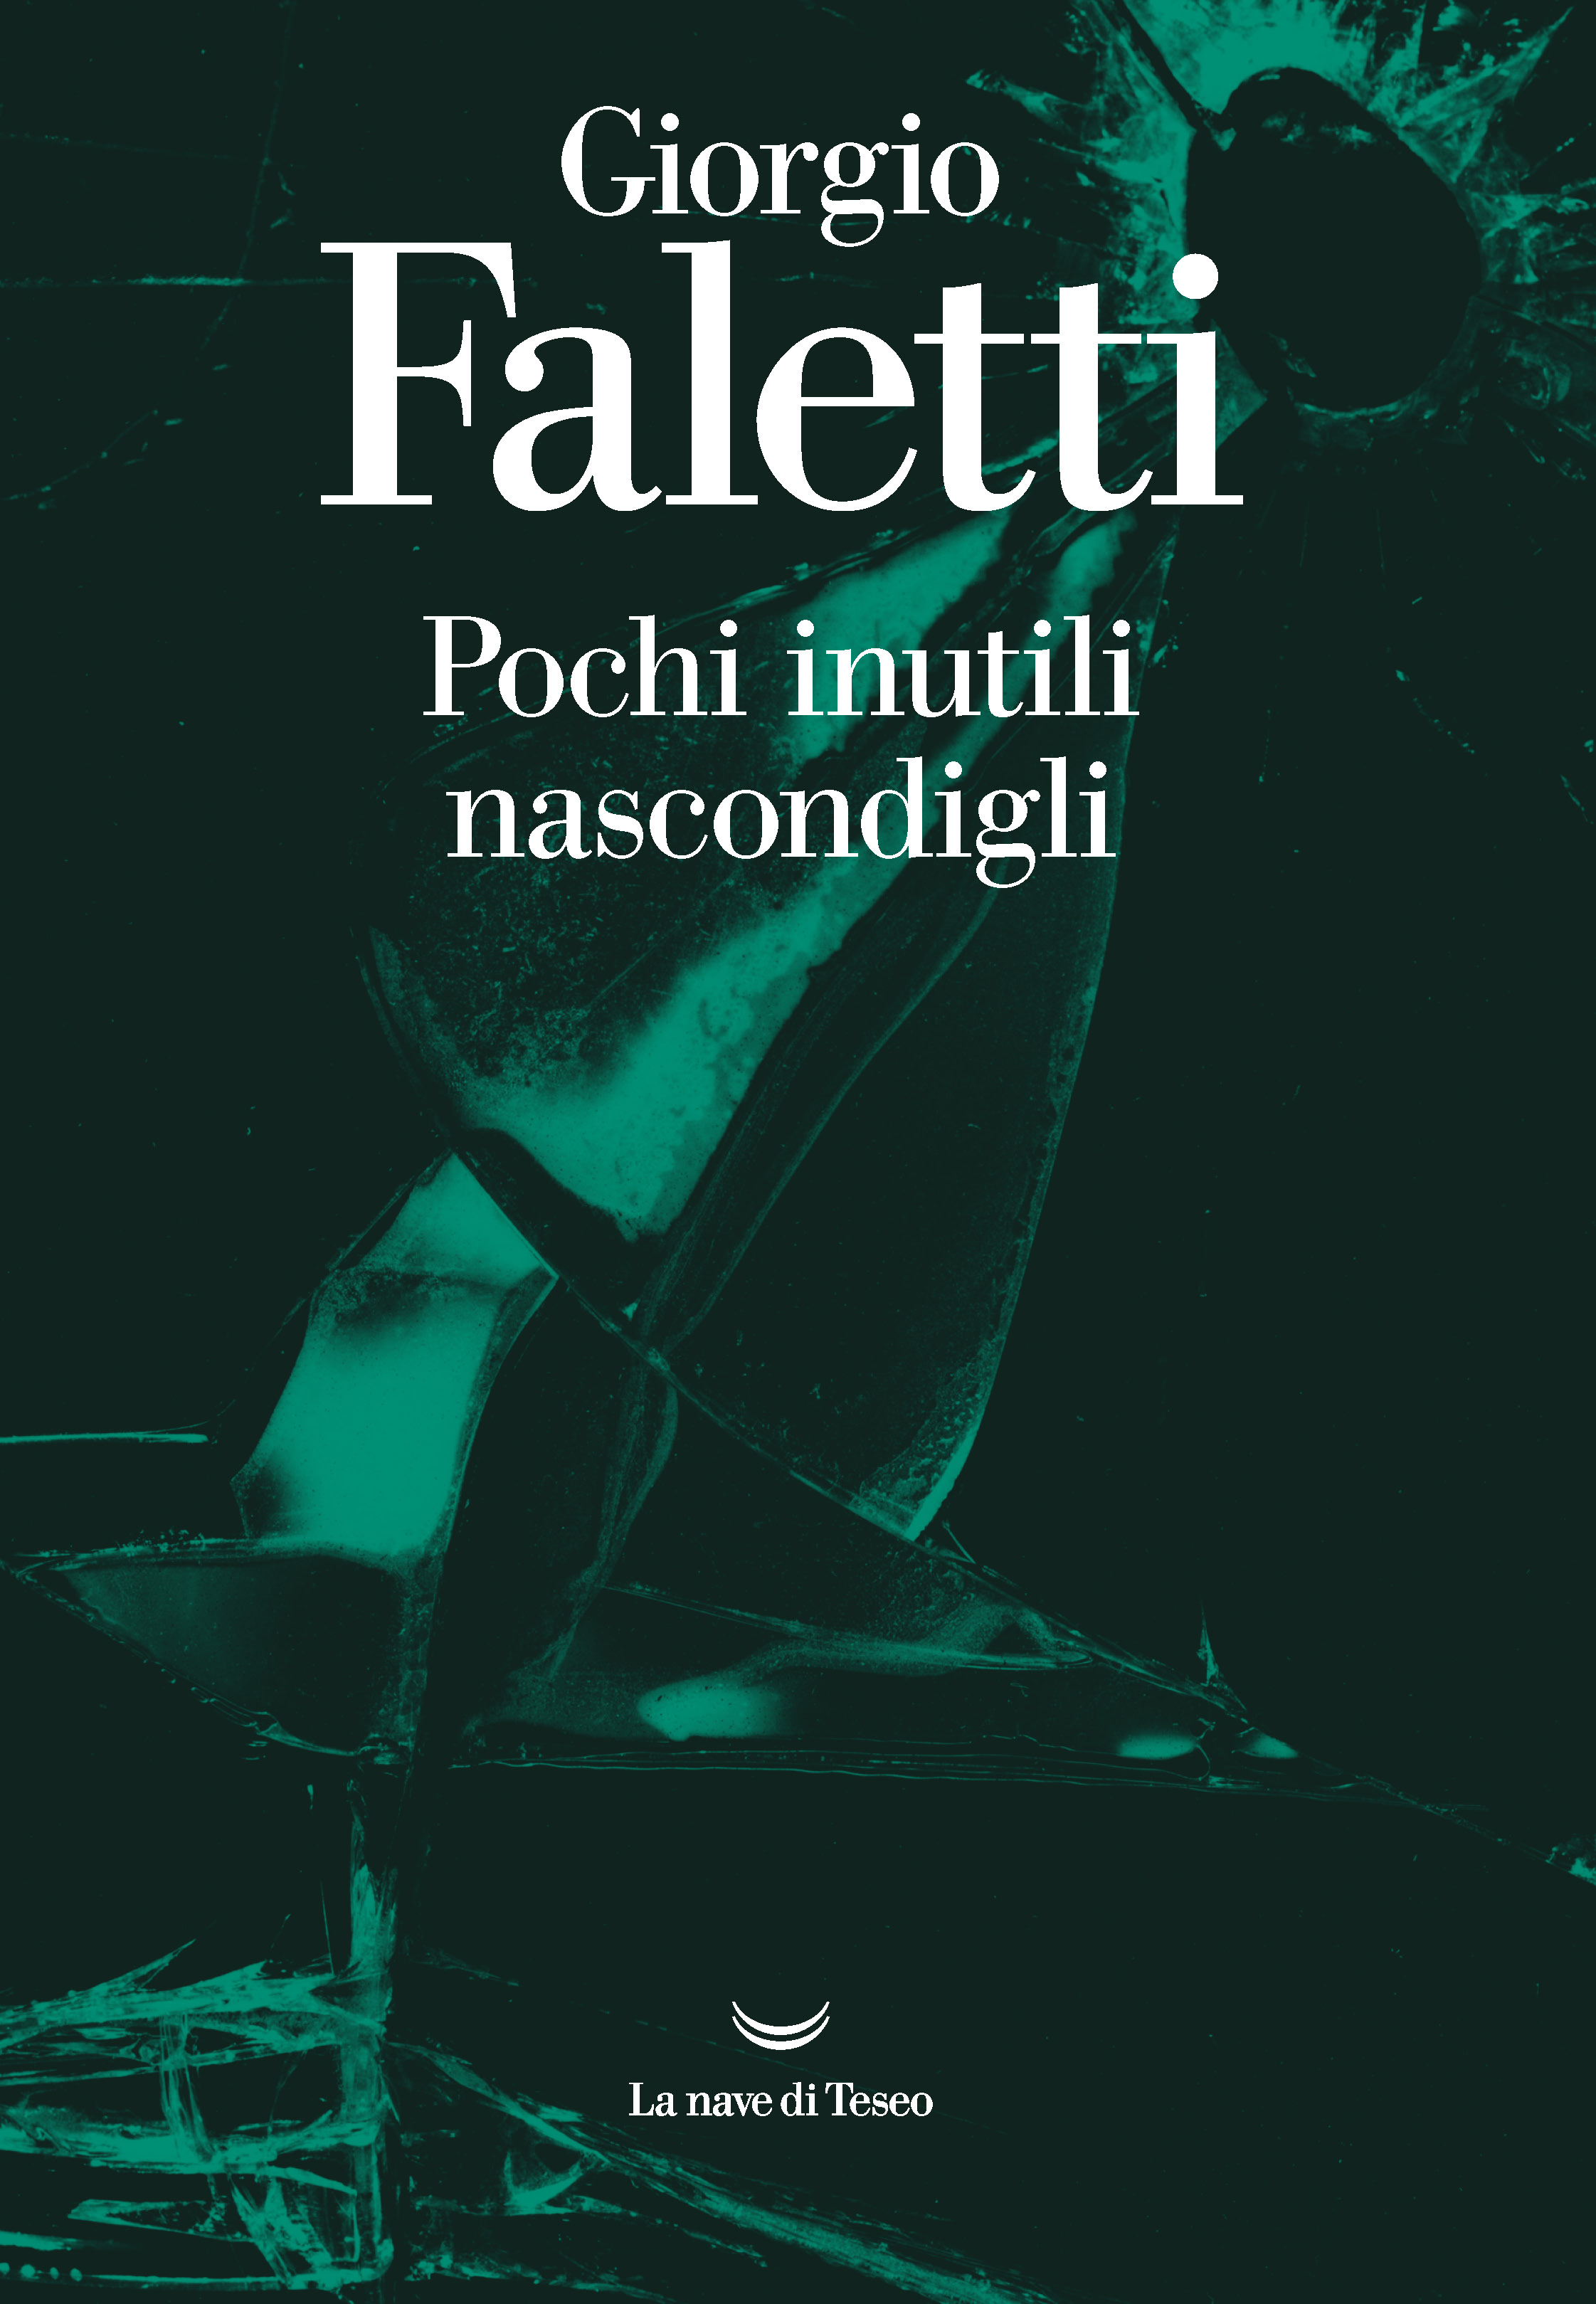 Copertina del romanzo di Giorgio Faletti Pochi inutili nascondigli​, pubblicato da La Nave di Teseo  